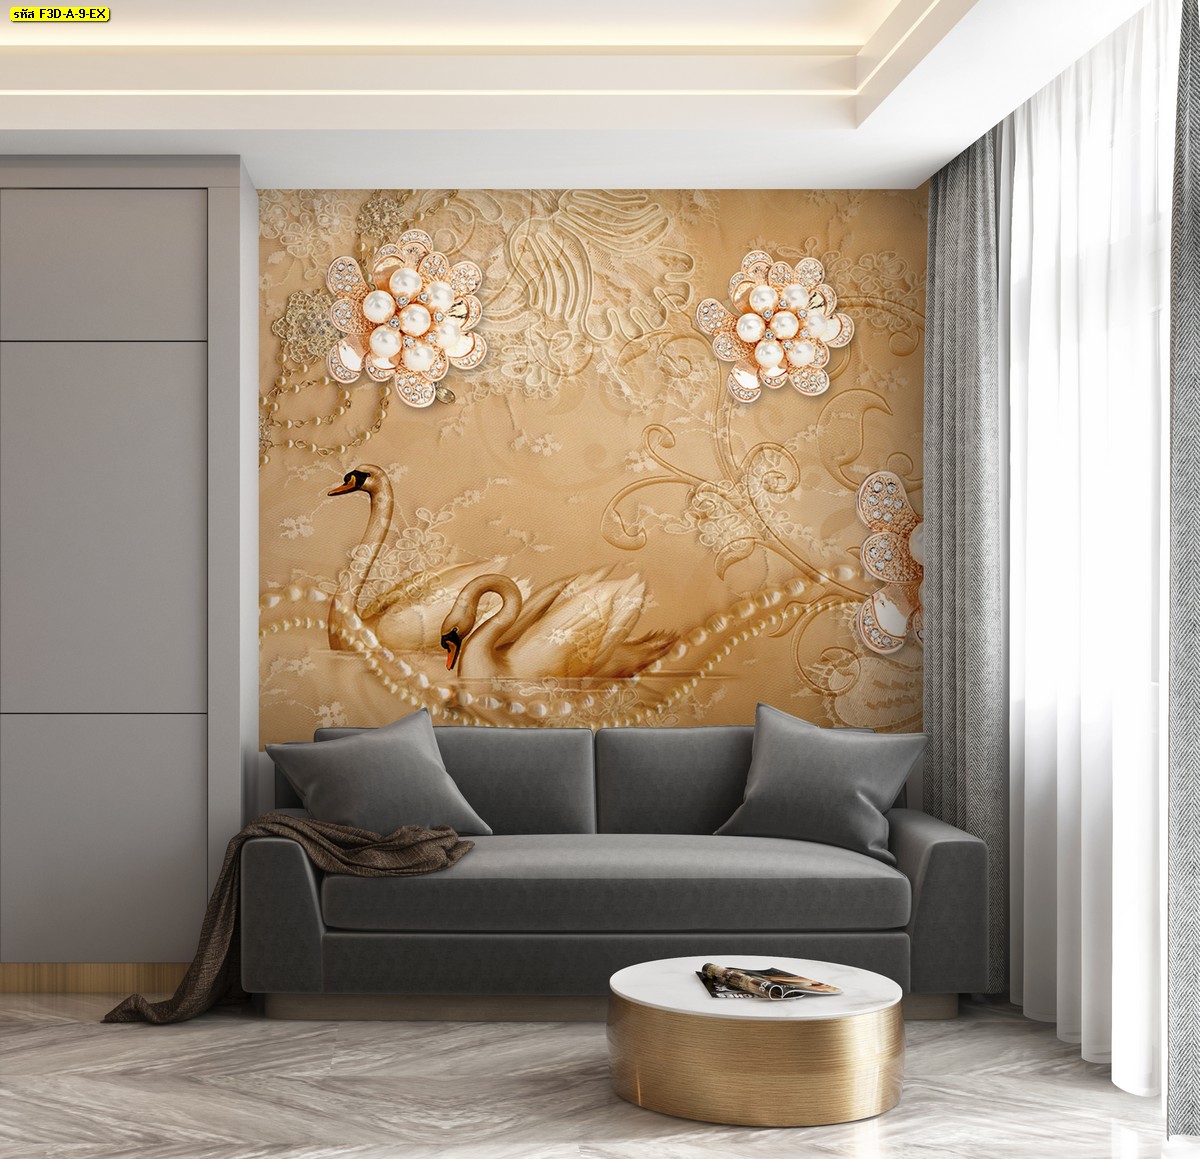 Wallpaper สั่งปริ้นลายหงส์และดอกไม้เพชรพื้นทอง ผนังพื้นหลังสวยหรูอลังการ วอลเปเปอร์ห้องรับแขกสไตล์หรู